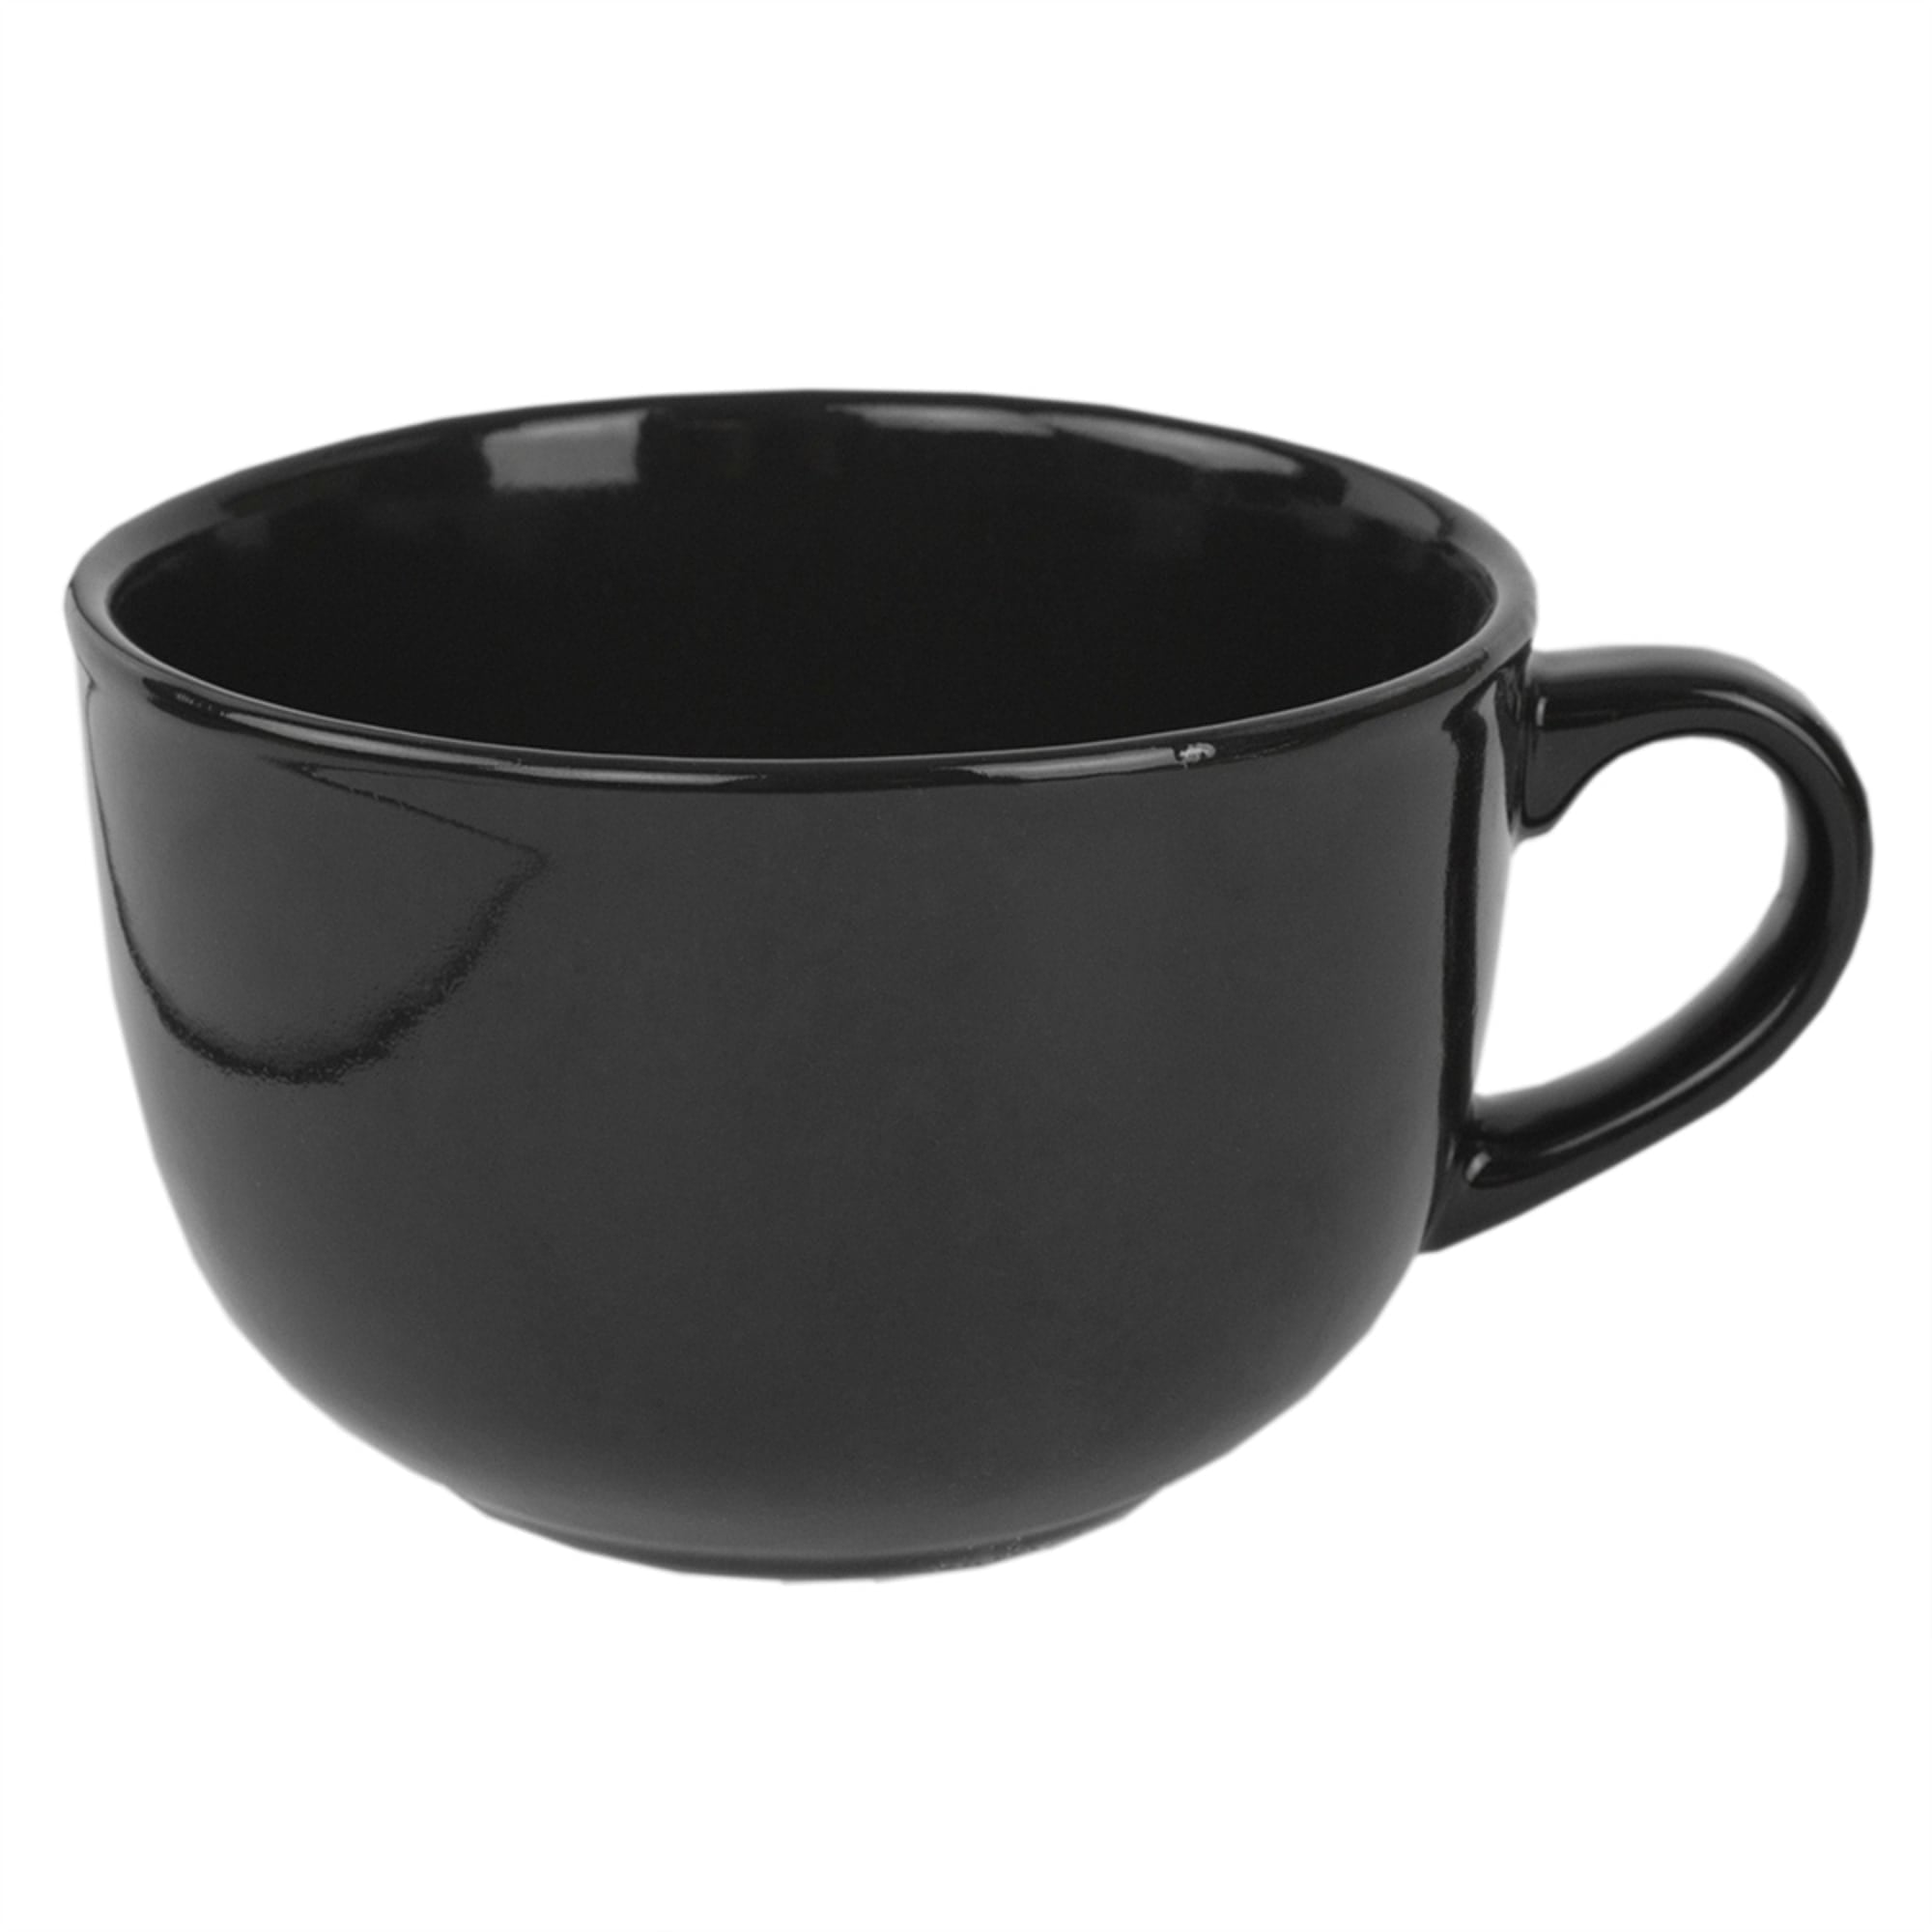 Home Basics Jumbo 22 oz Ceramic Mug, Black $3.00 EACH, CASE PACK OF 24